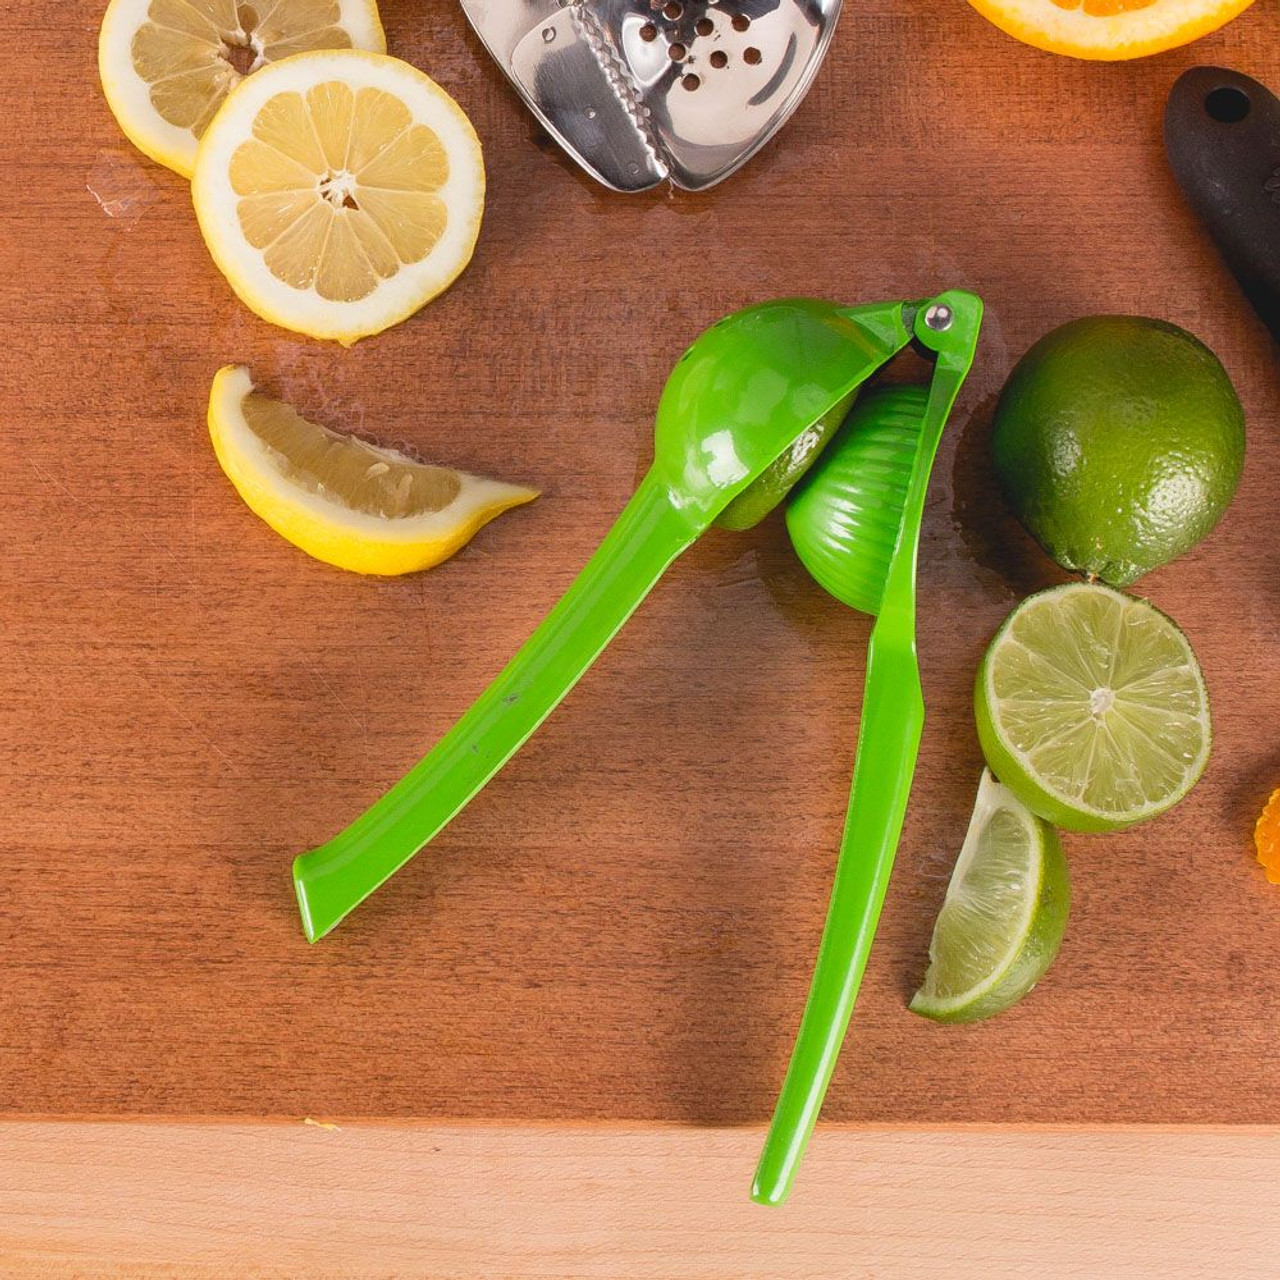 corona orange lemon slicer fruit slicer